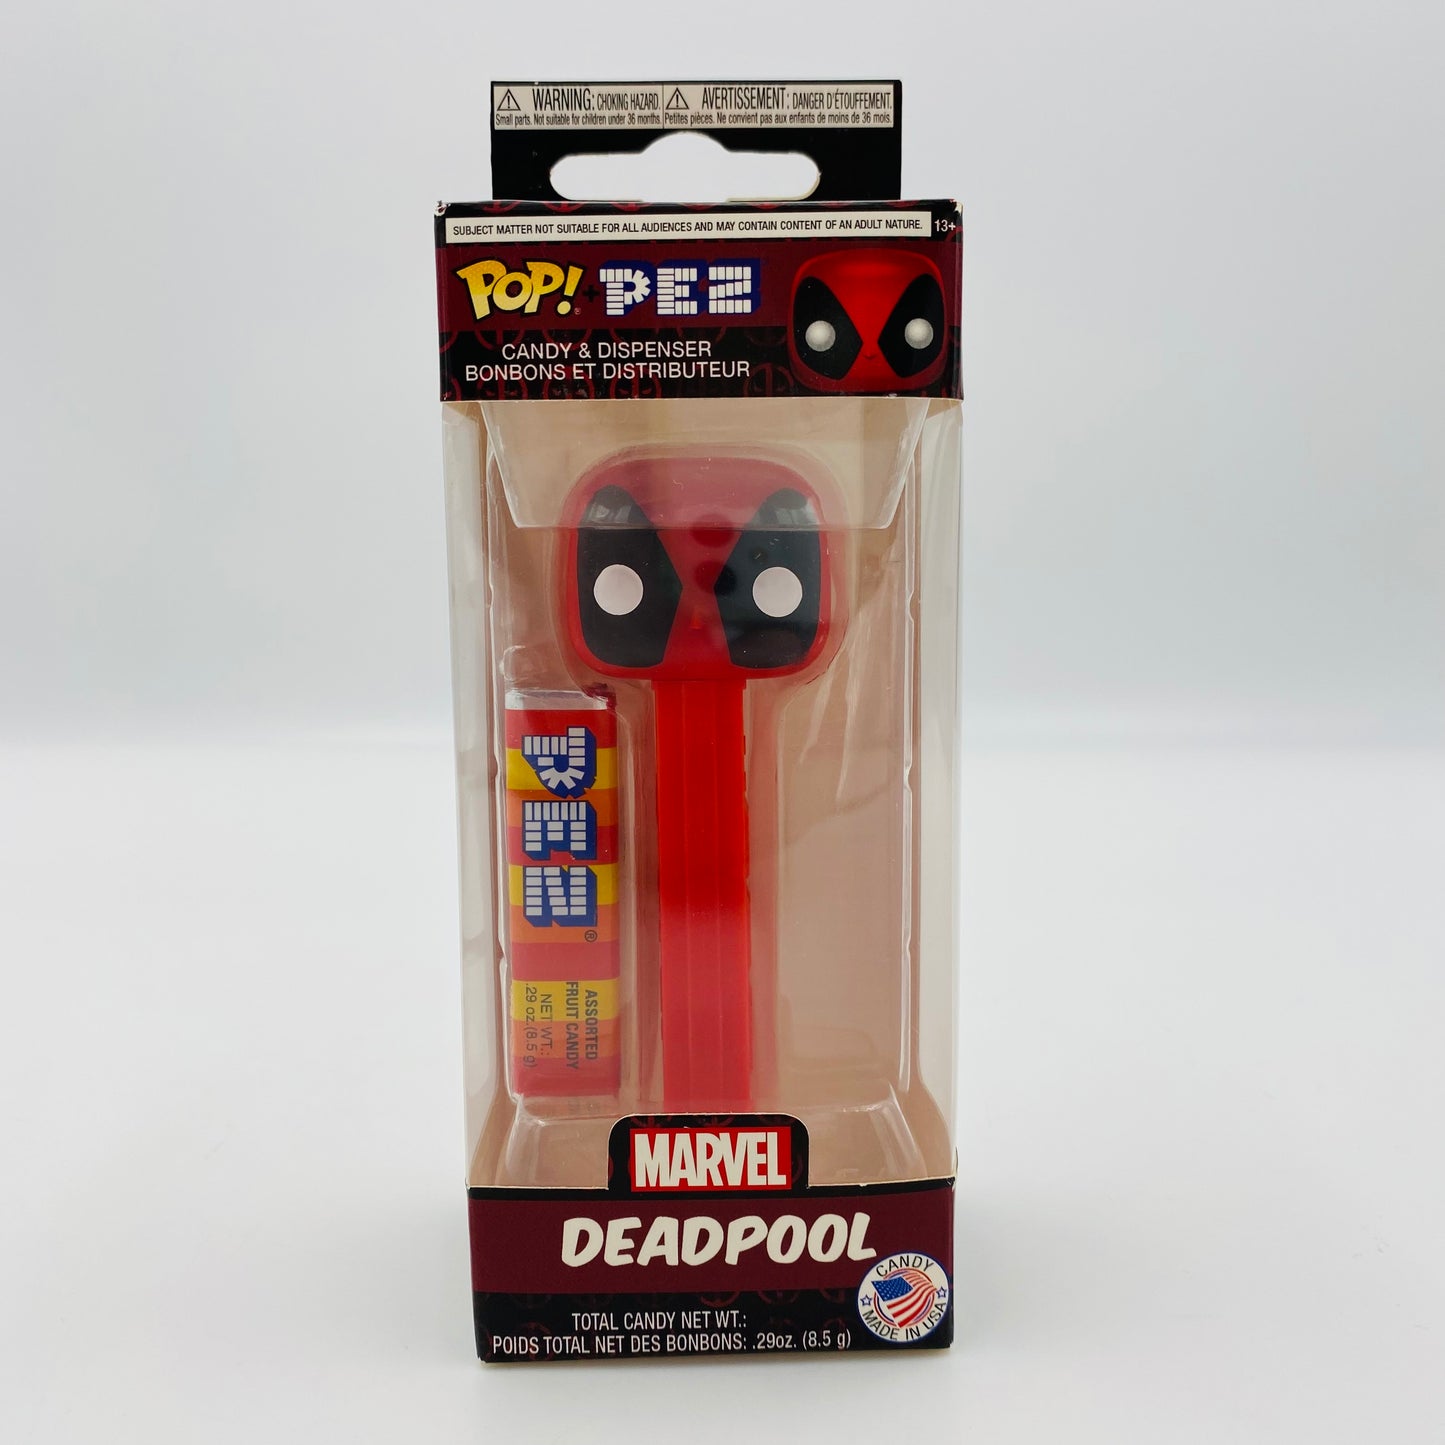 Marvel Deadpool Pop! + PEZ dispenser (2018) boxed